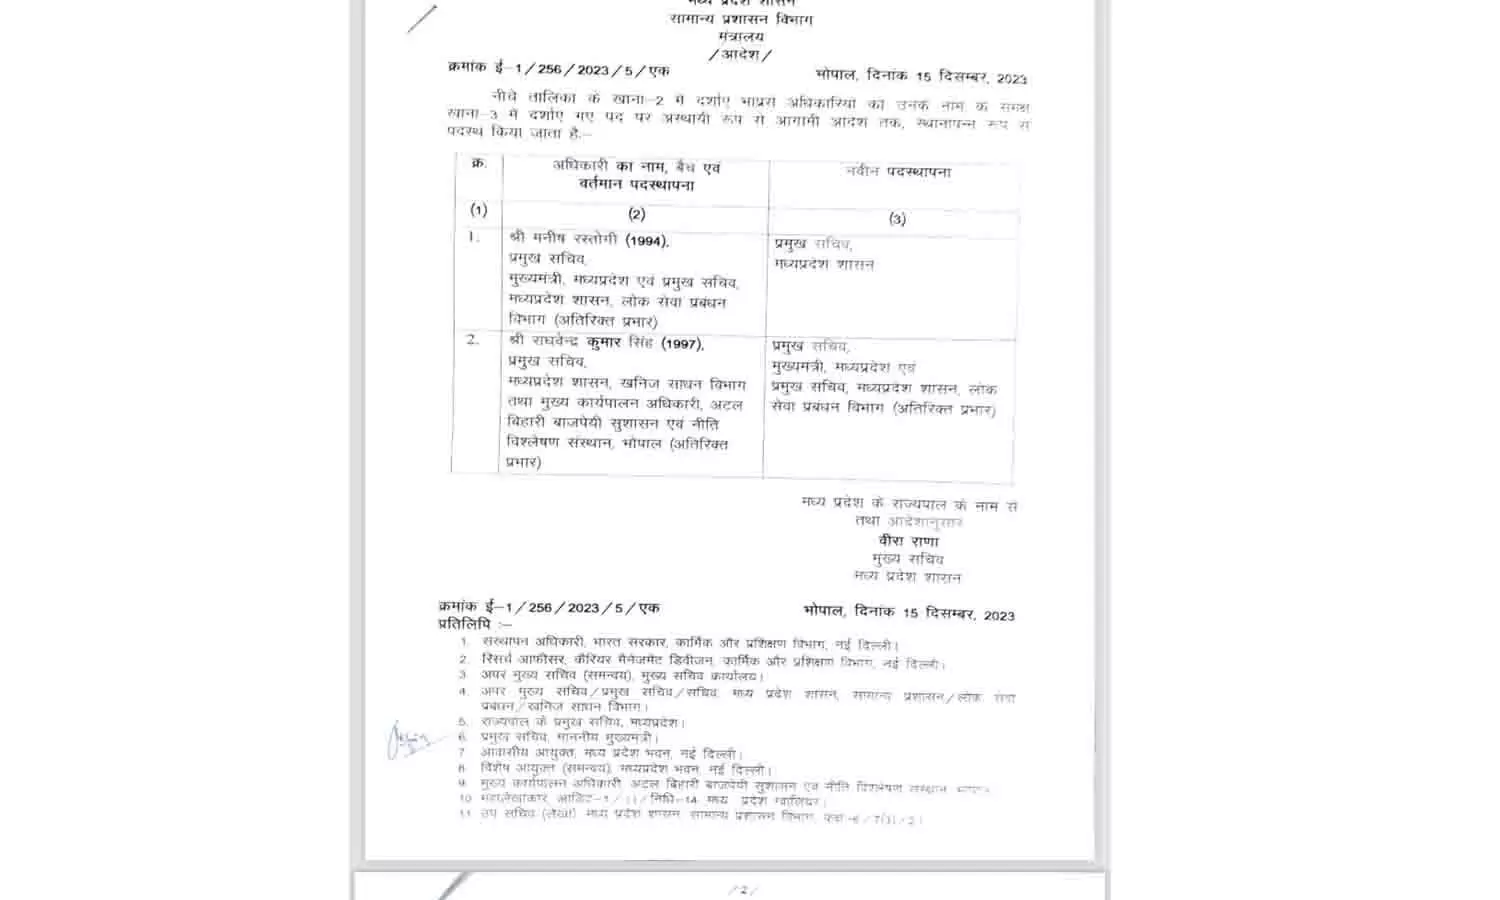 MP IAS Transfer 2023: मोहन यादव की सरकार बनते ही 2 अधिकारियो को मिला अतिरिक्त प्रभार, आदेश हुआ जारी